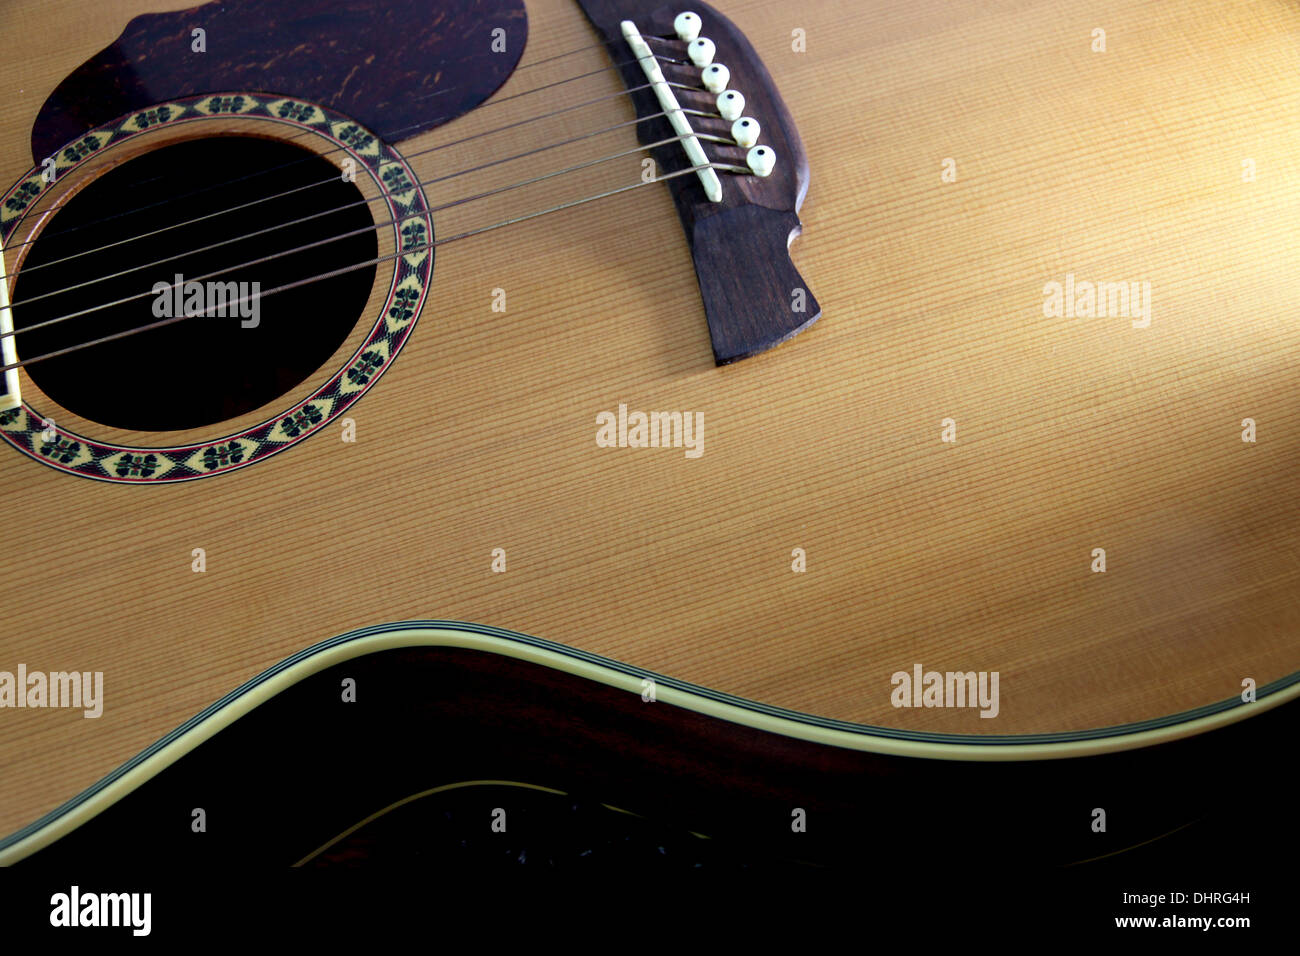 L'immagine di questa parte di chitarra e luce della seconda venuta e la luce che risplende da Windows. Foto Stock